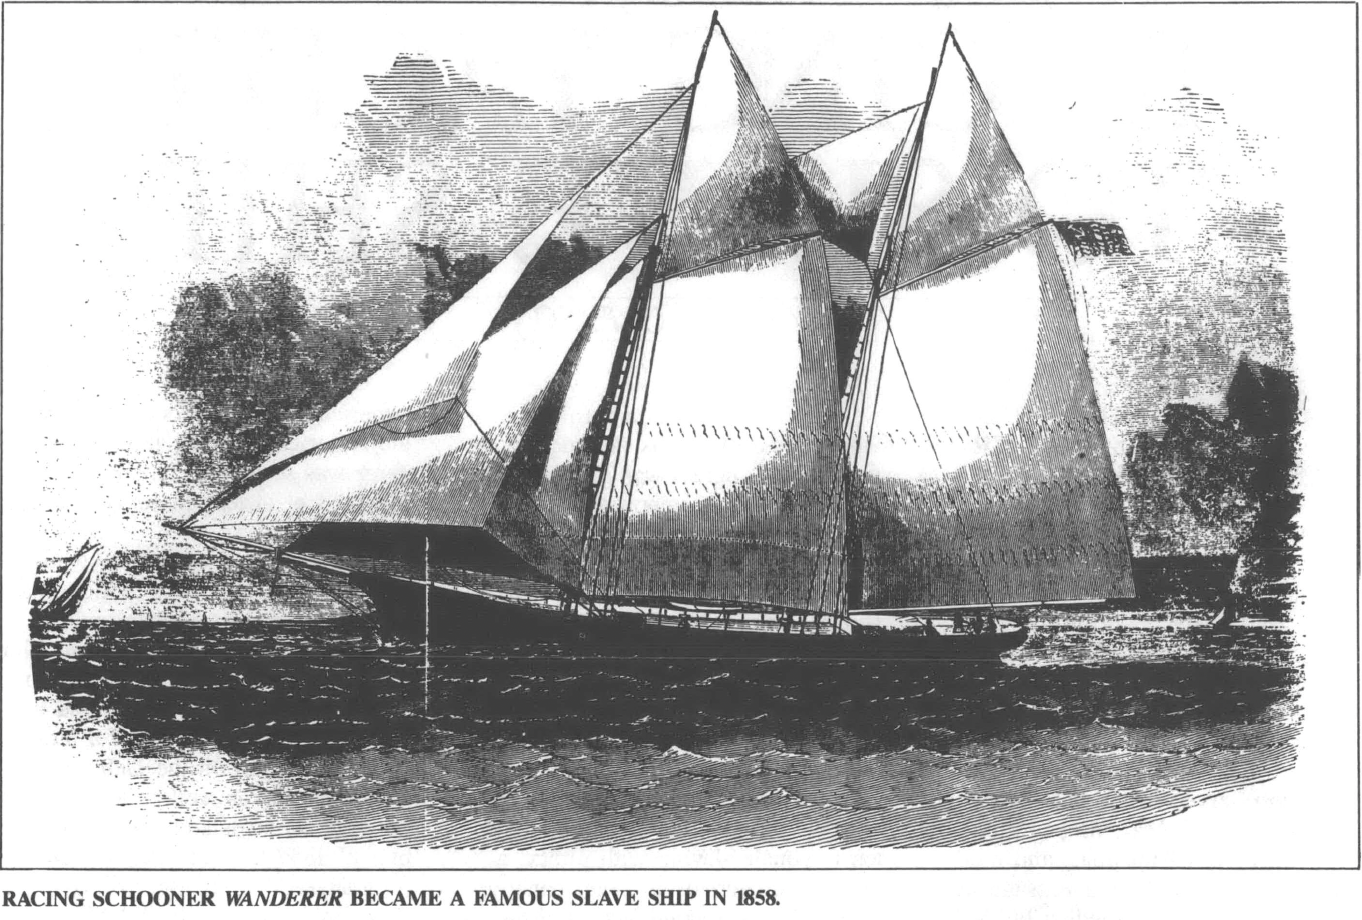 Illustration of the Wanderer, a racing schooner turned slave ship, in 1984